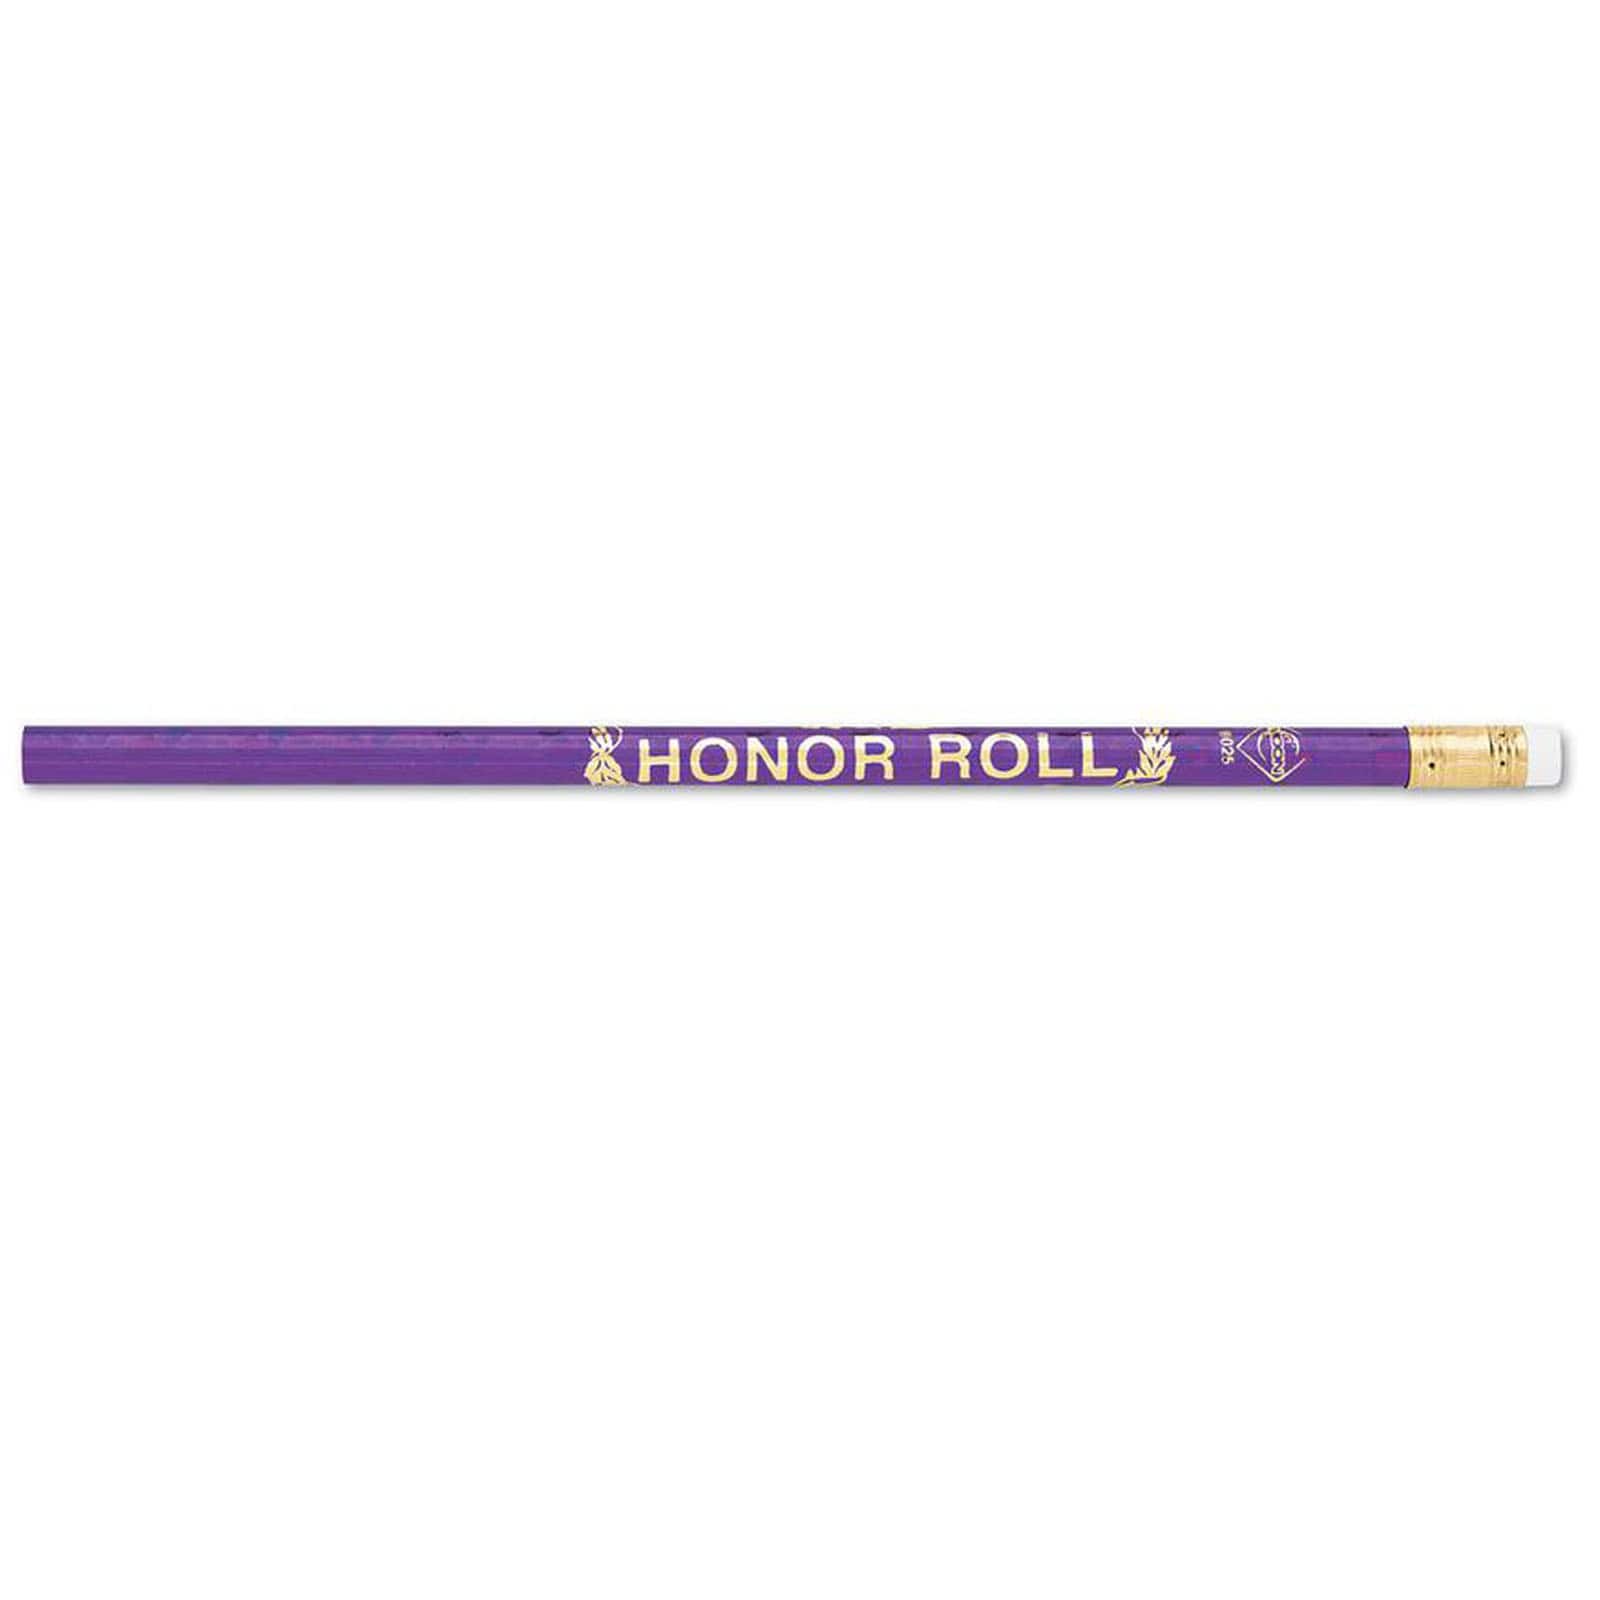 J.R. Moon Pencil Co. Honor Roll Glitz Pencils 12 Per Pack - 12 Packs